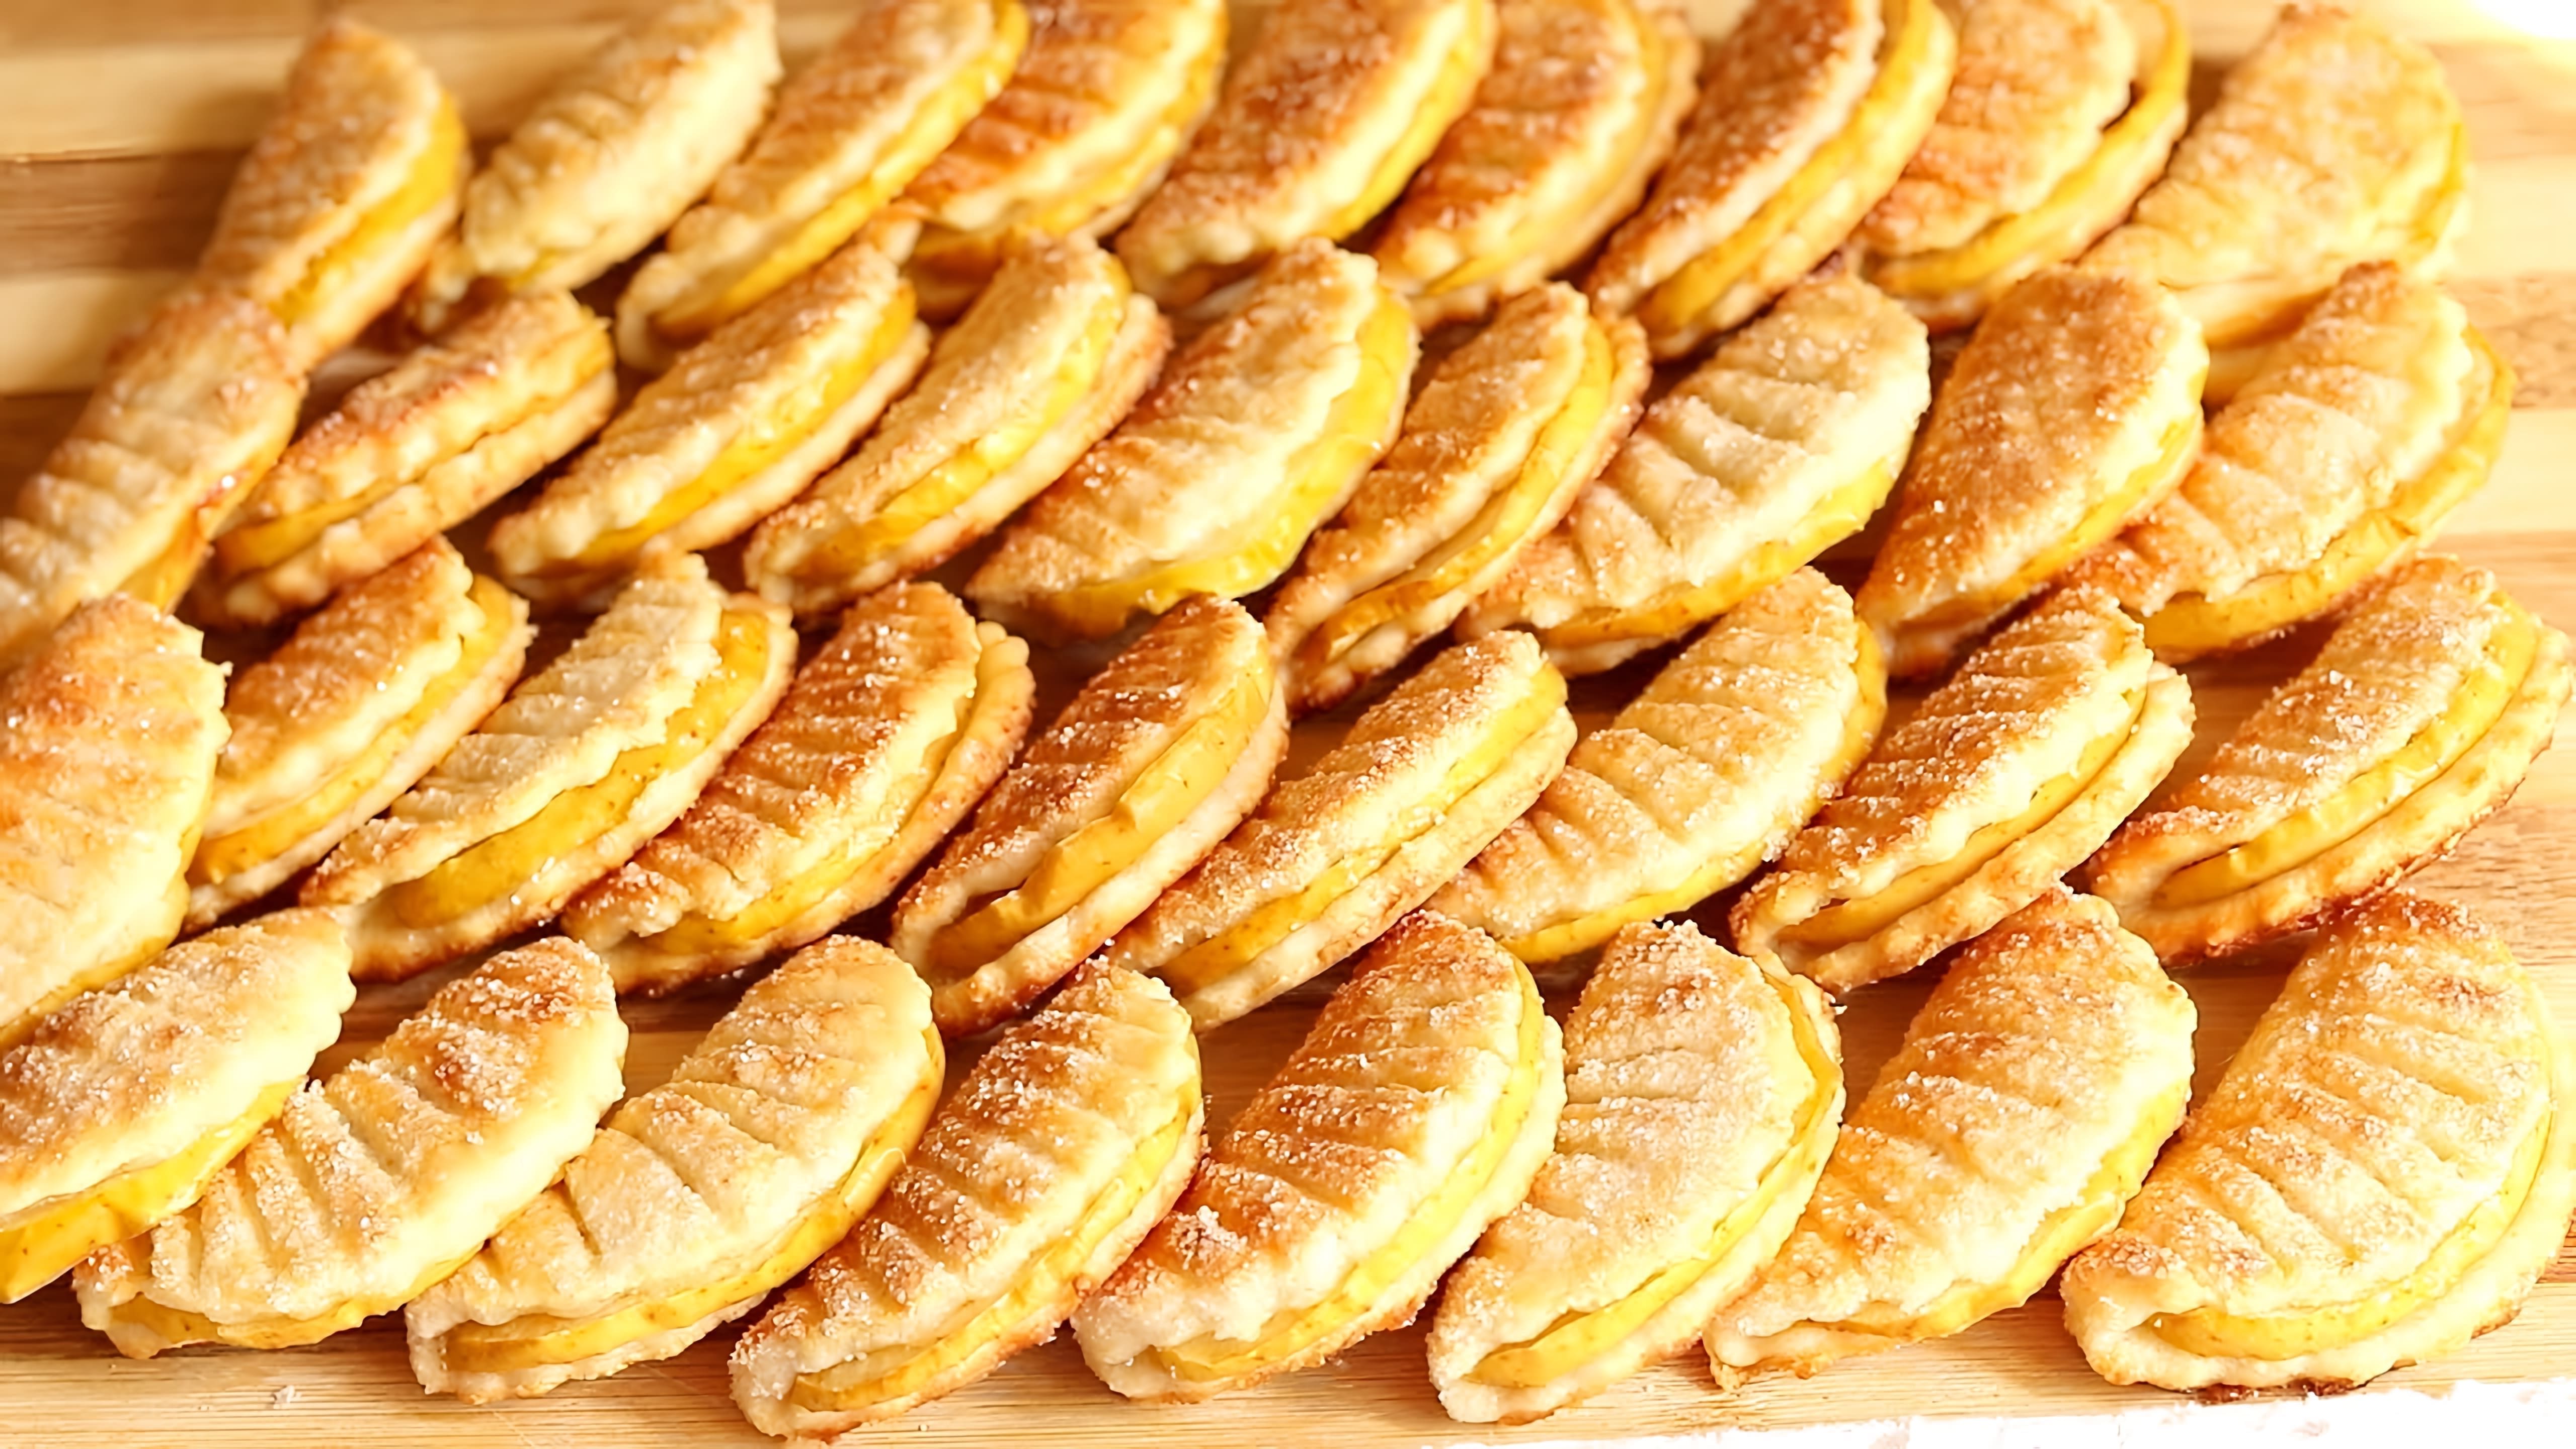 В этом видео демонстрируется рецепт приготовления творожного печенья с яблочной начинкой